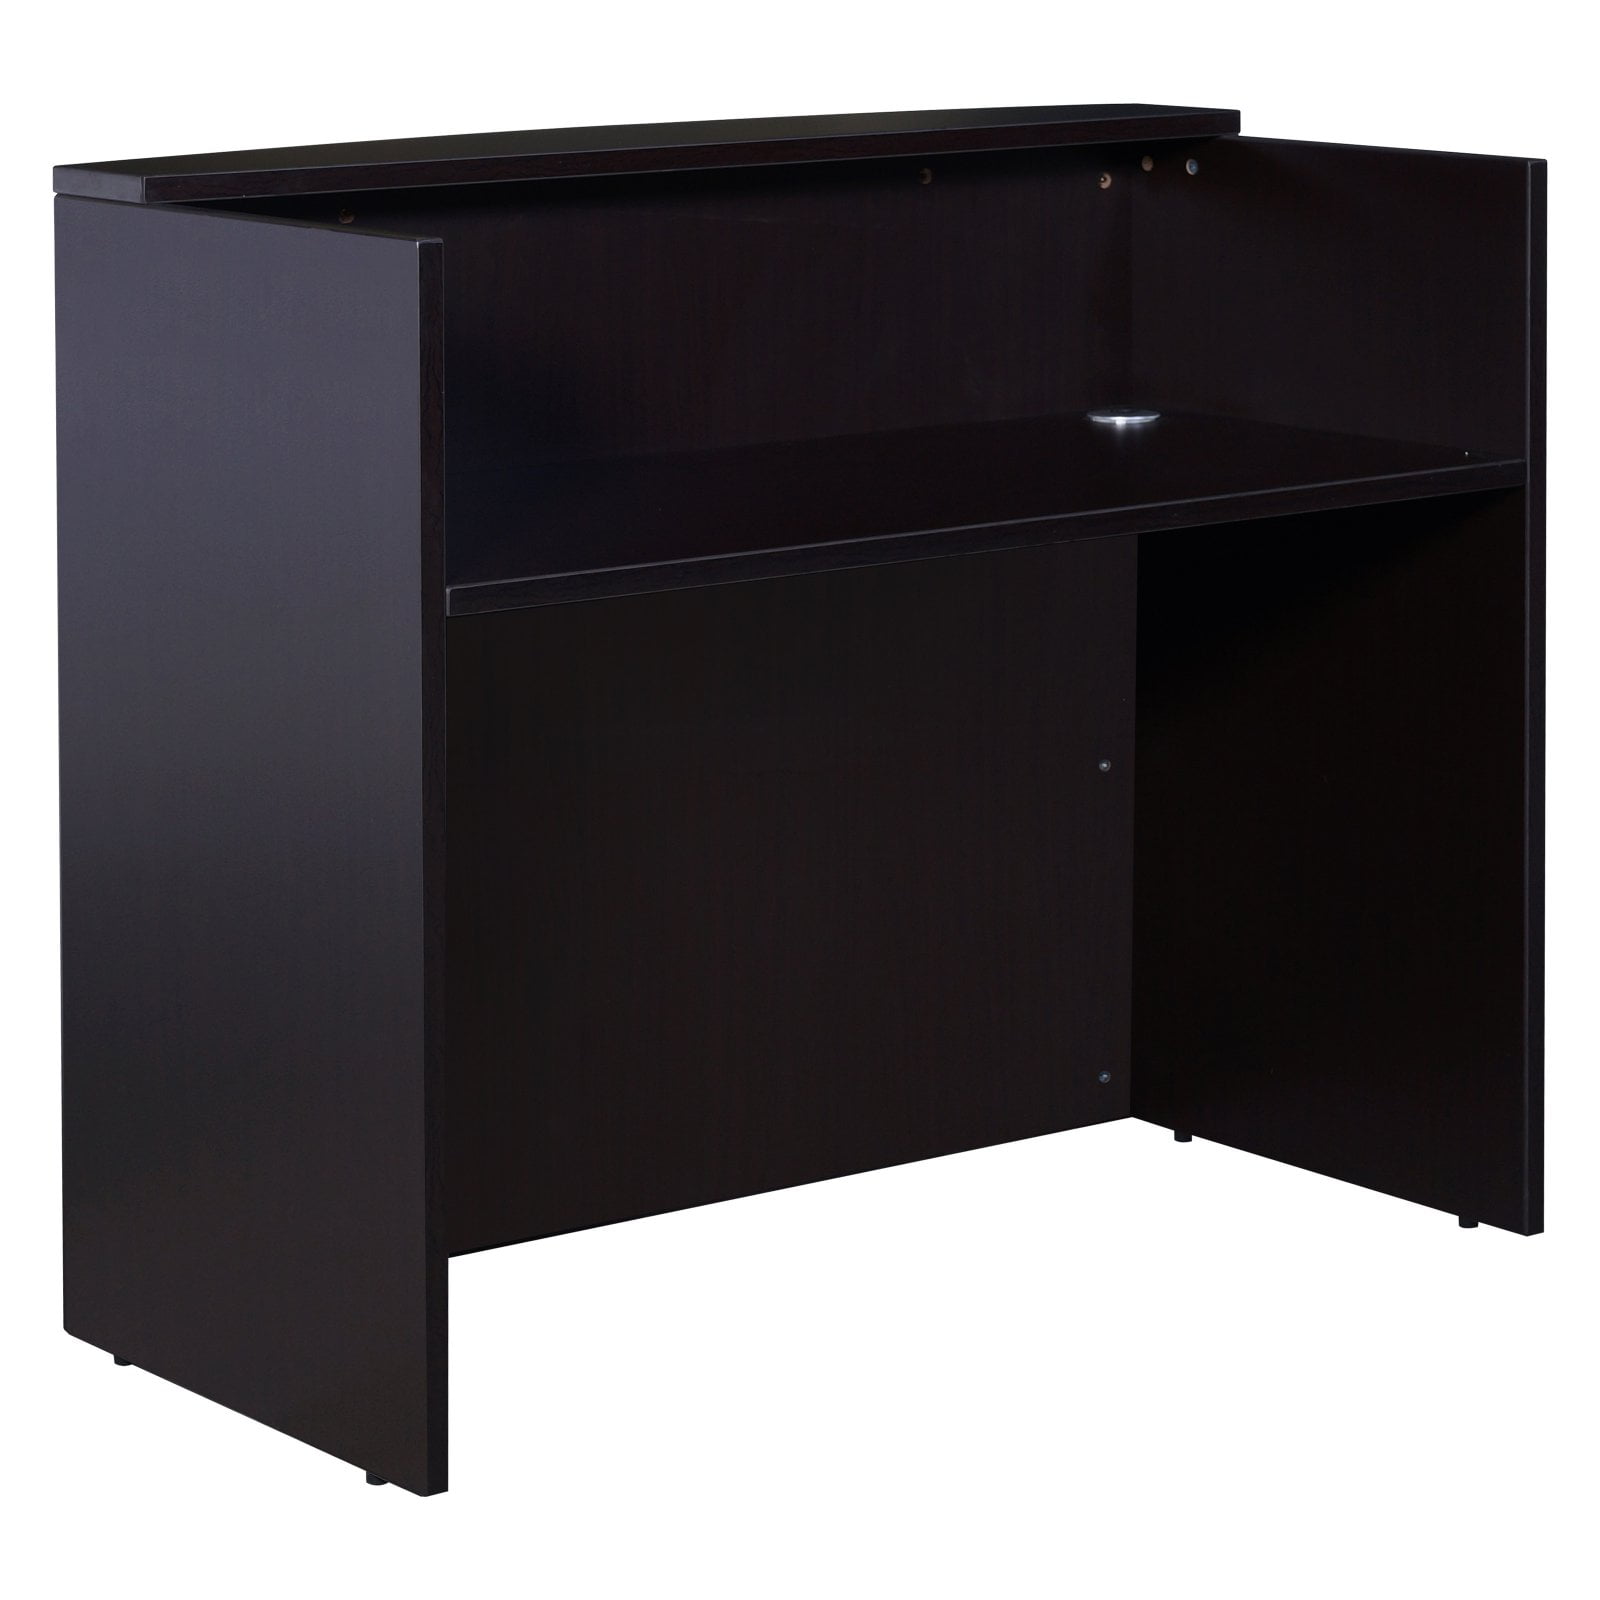 N168-moc Receiption Desk, 48 W X 26 D X 41.5 H In. - Mocha